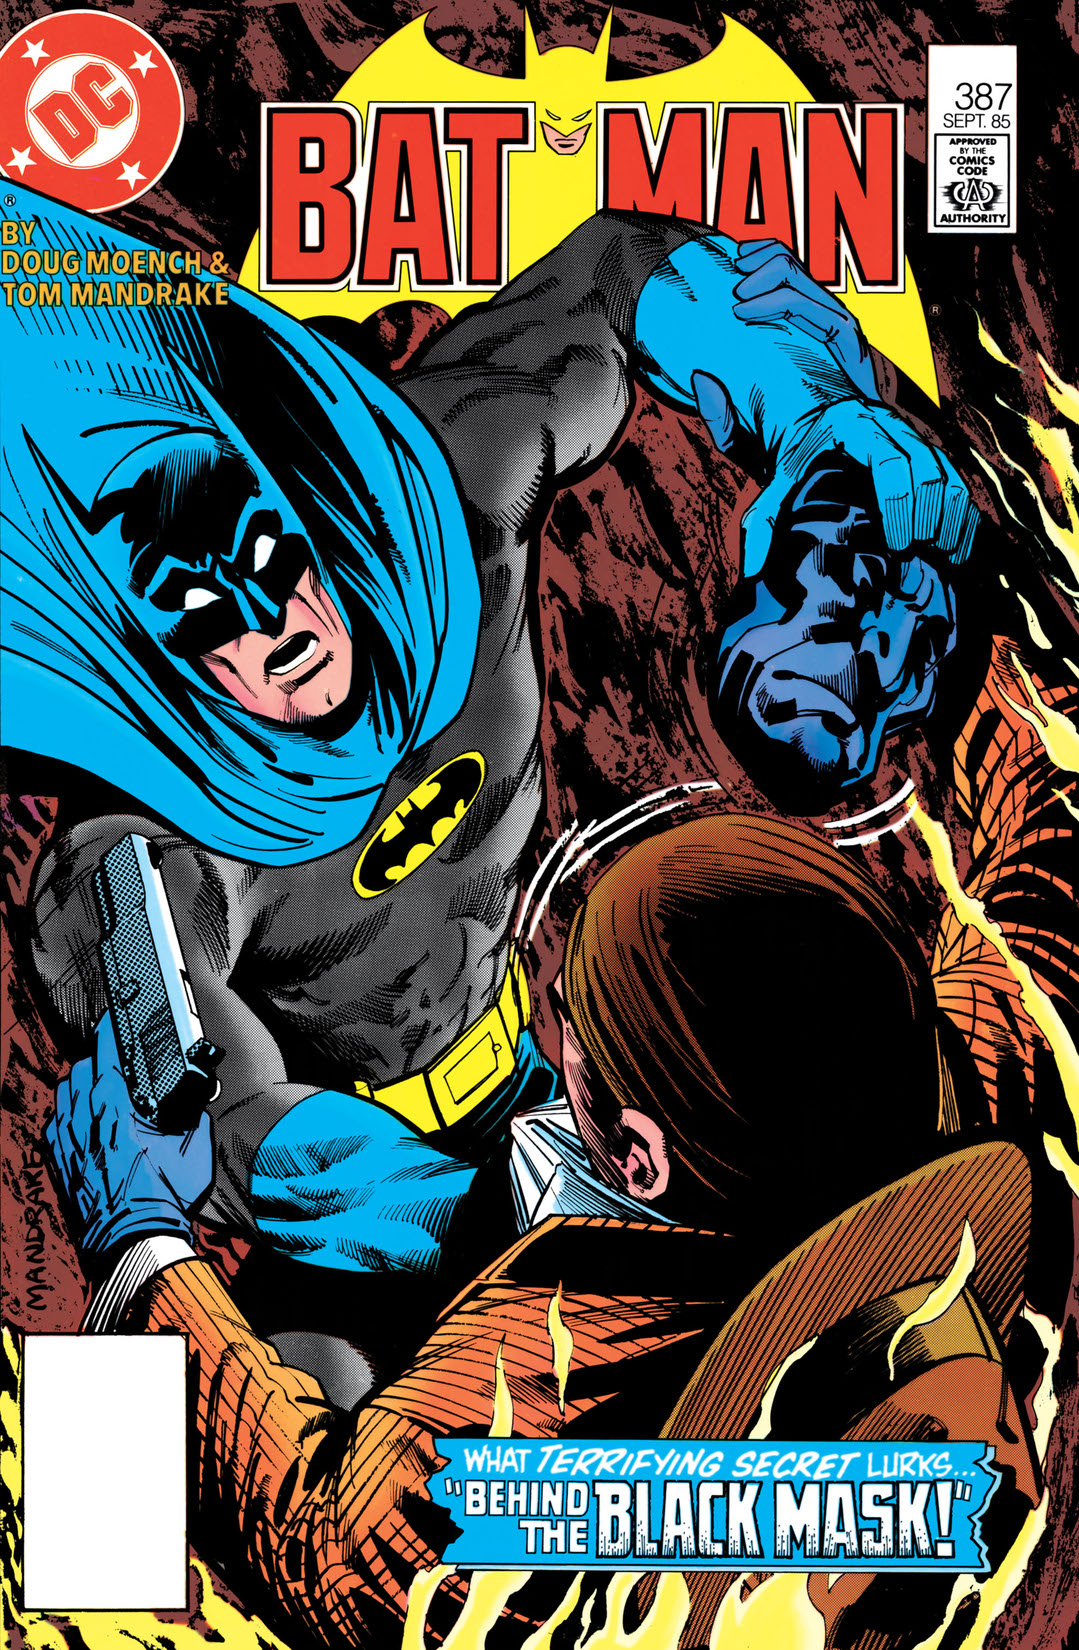 Batman (1940-) #387 preview images